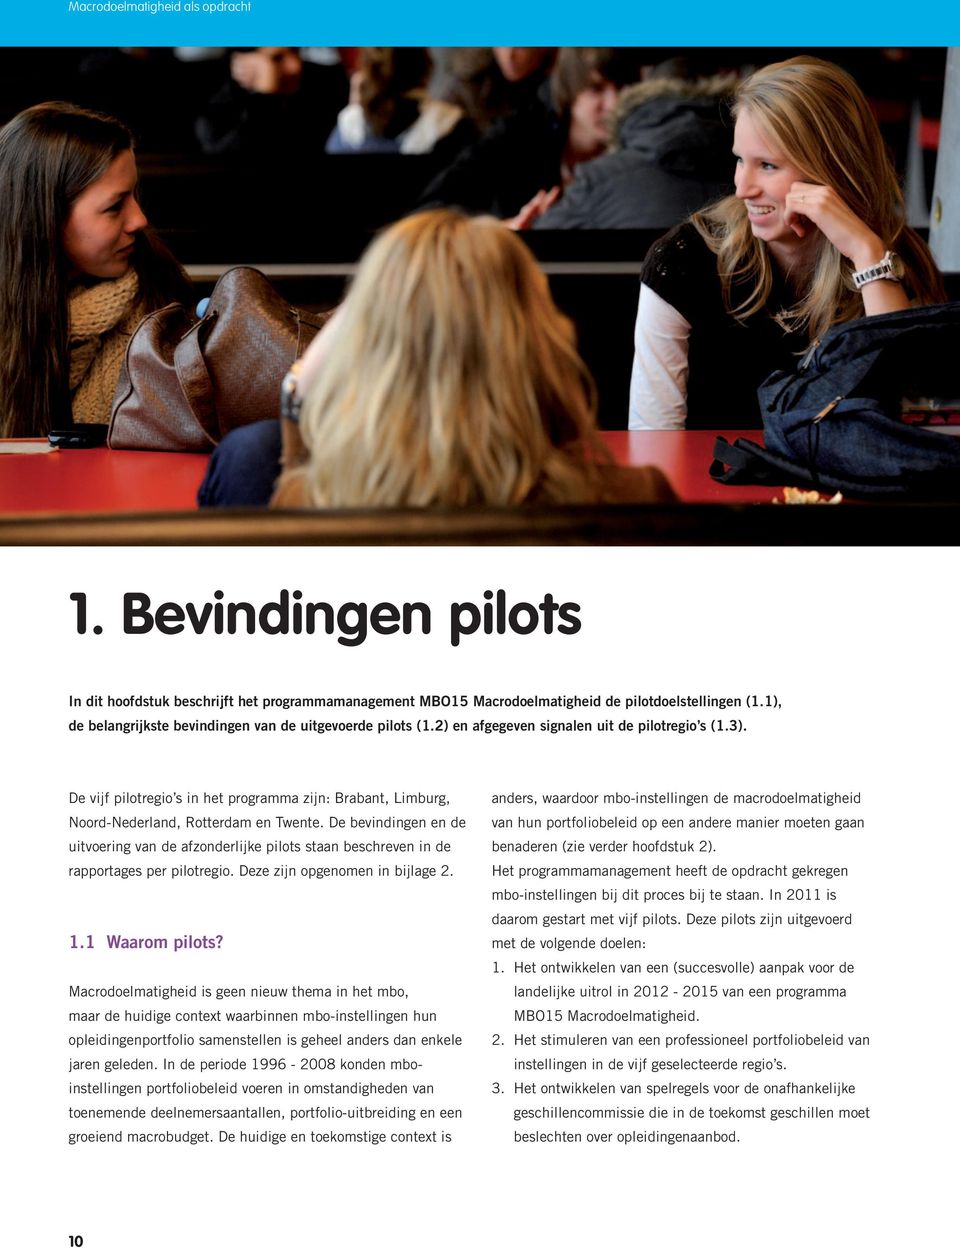 De vijf pilotregio s in het programma zijn: Brabant, Limburg, Noord-Nederland, Rotterdam en Twente.